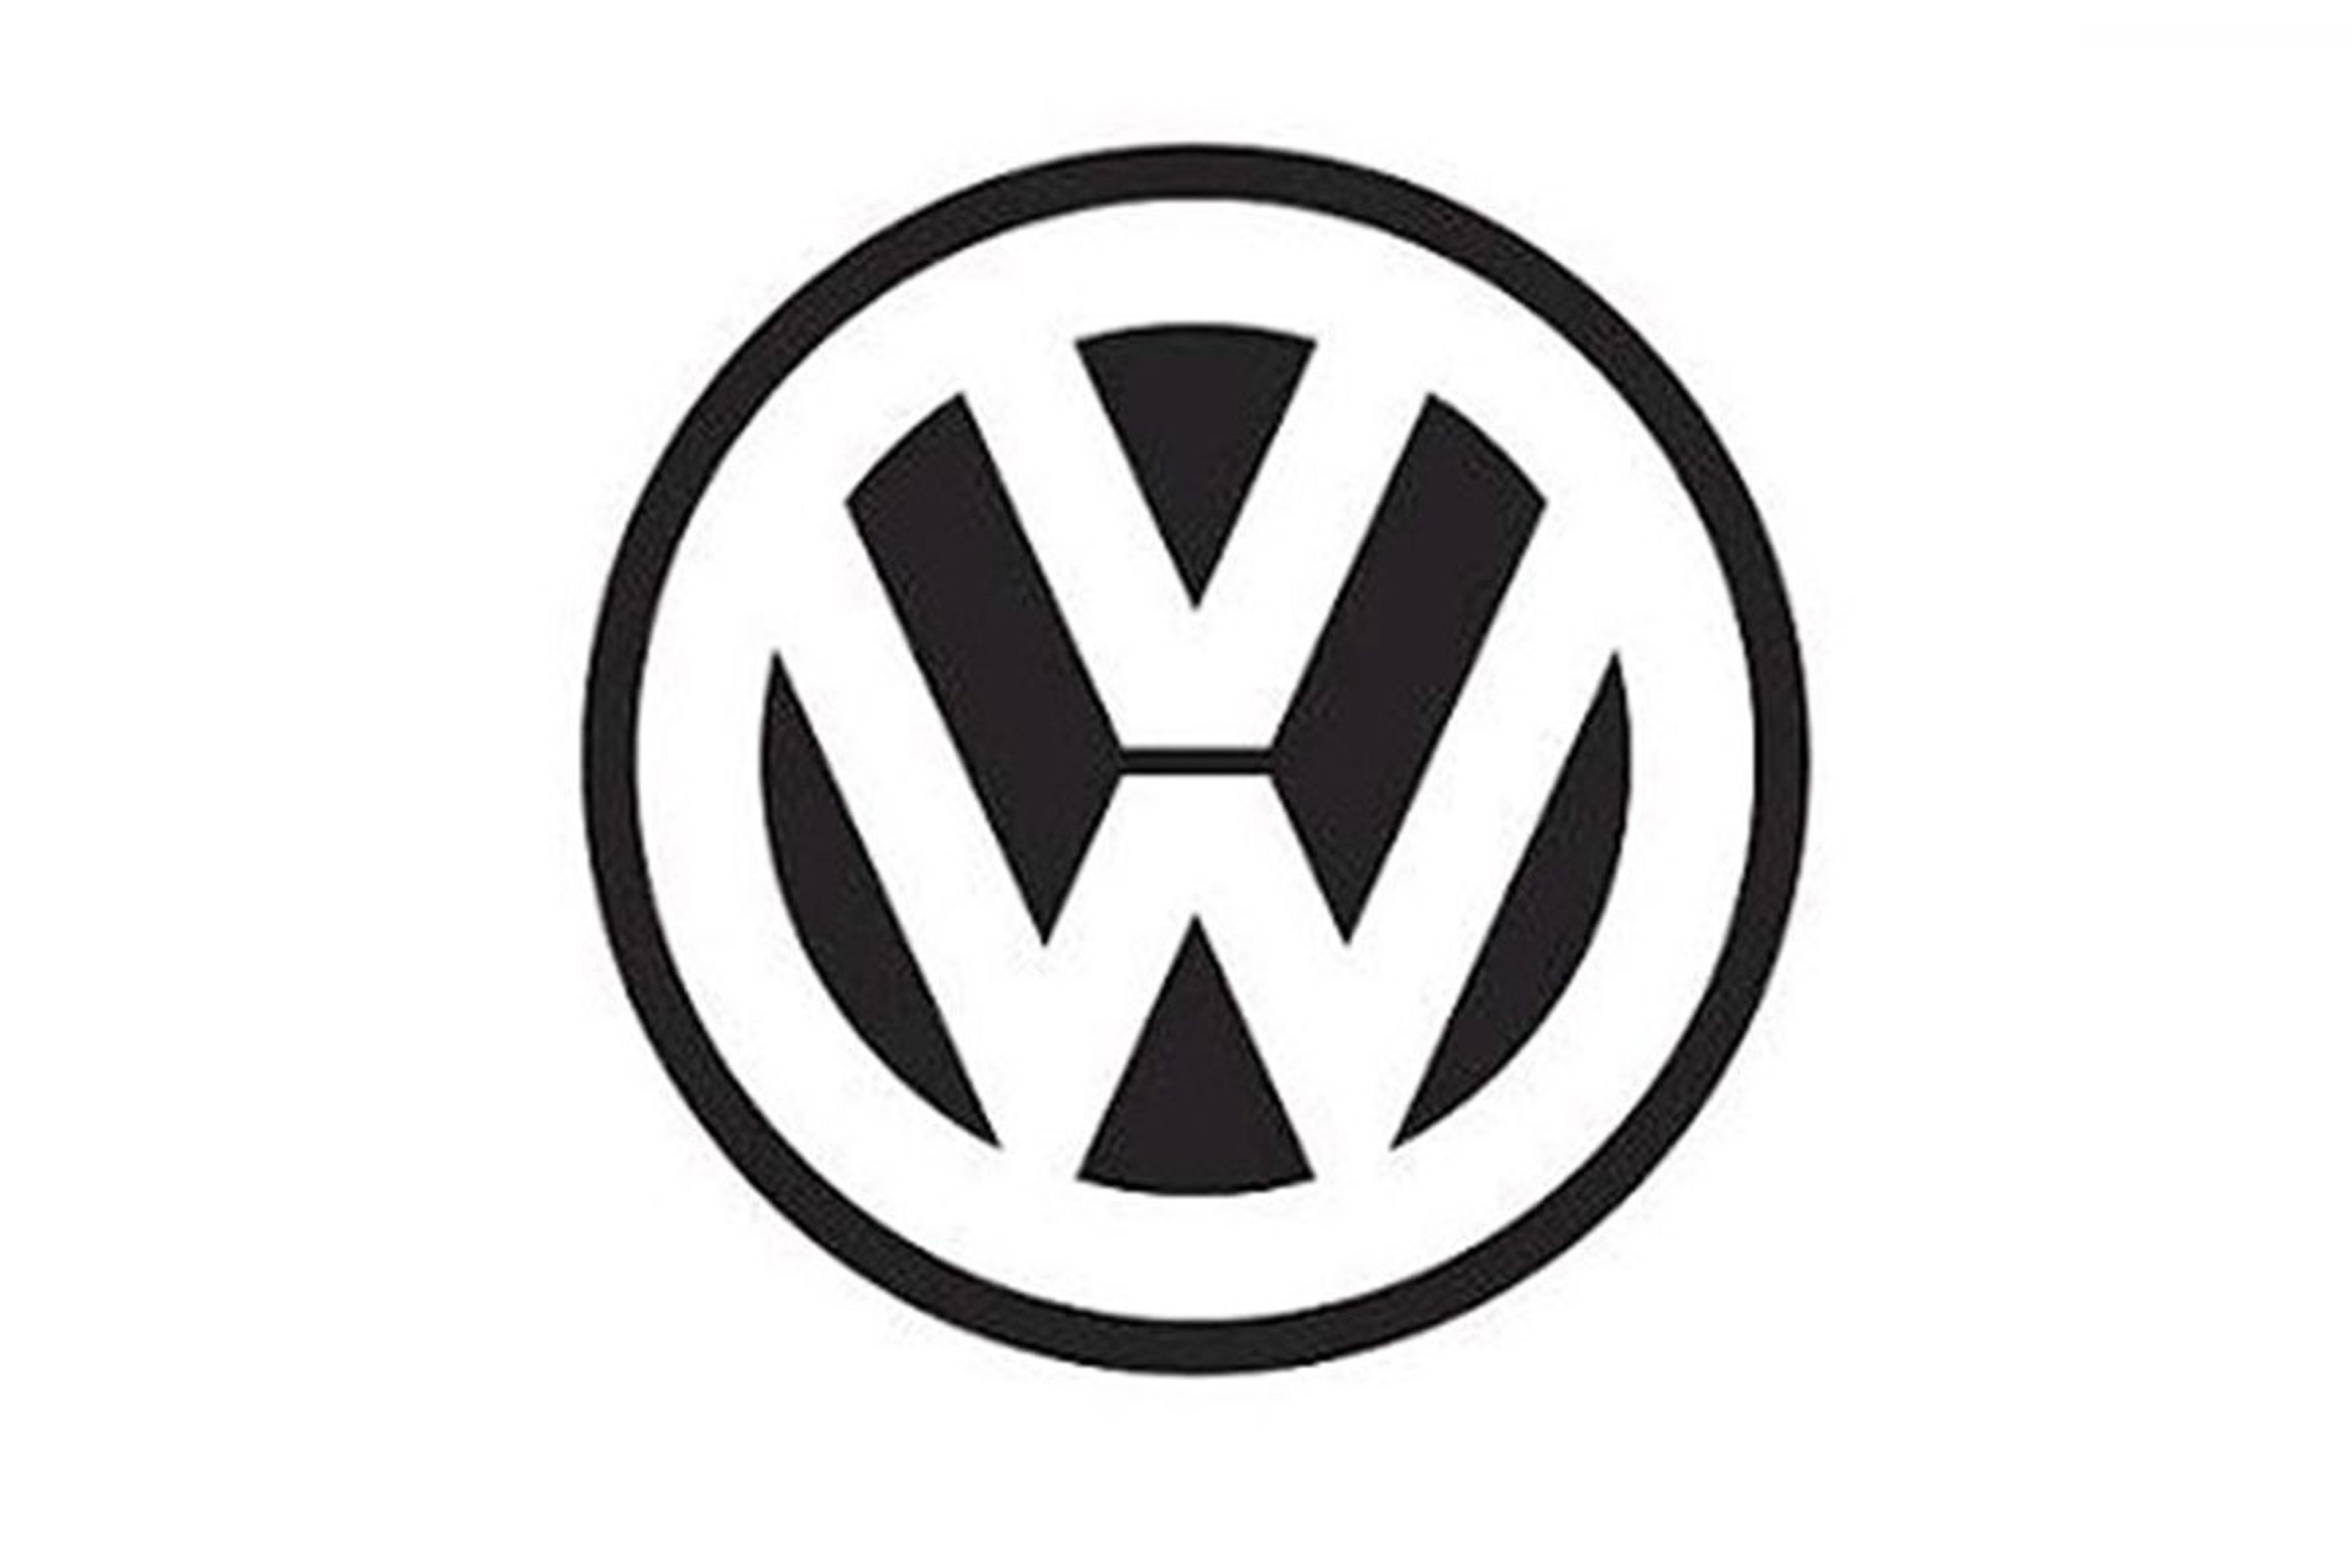 Esta es la historia del logotipo de Volkswagen: su evolución hasta